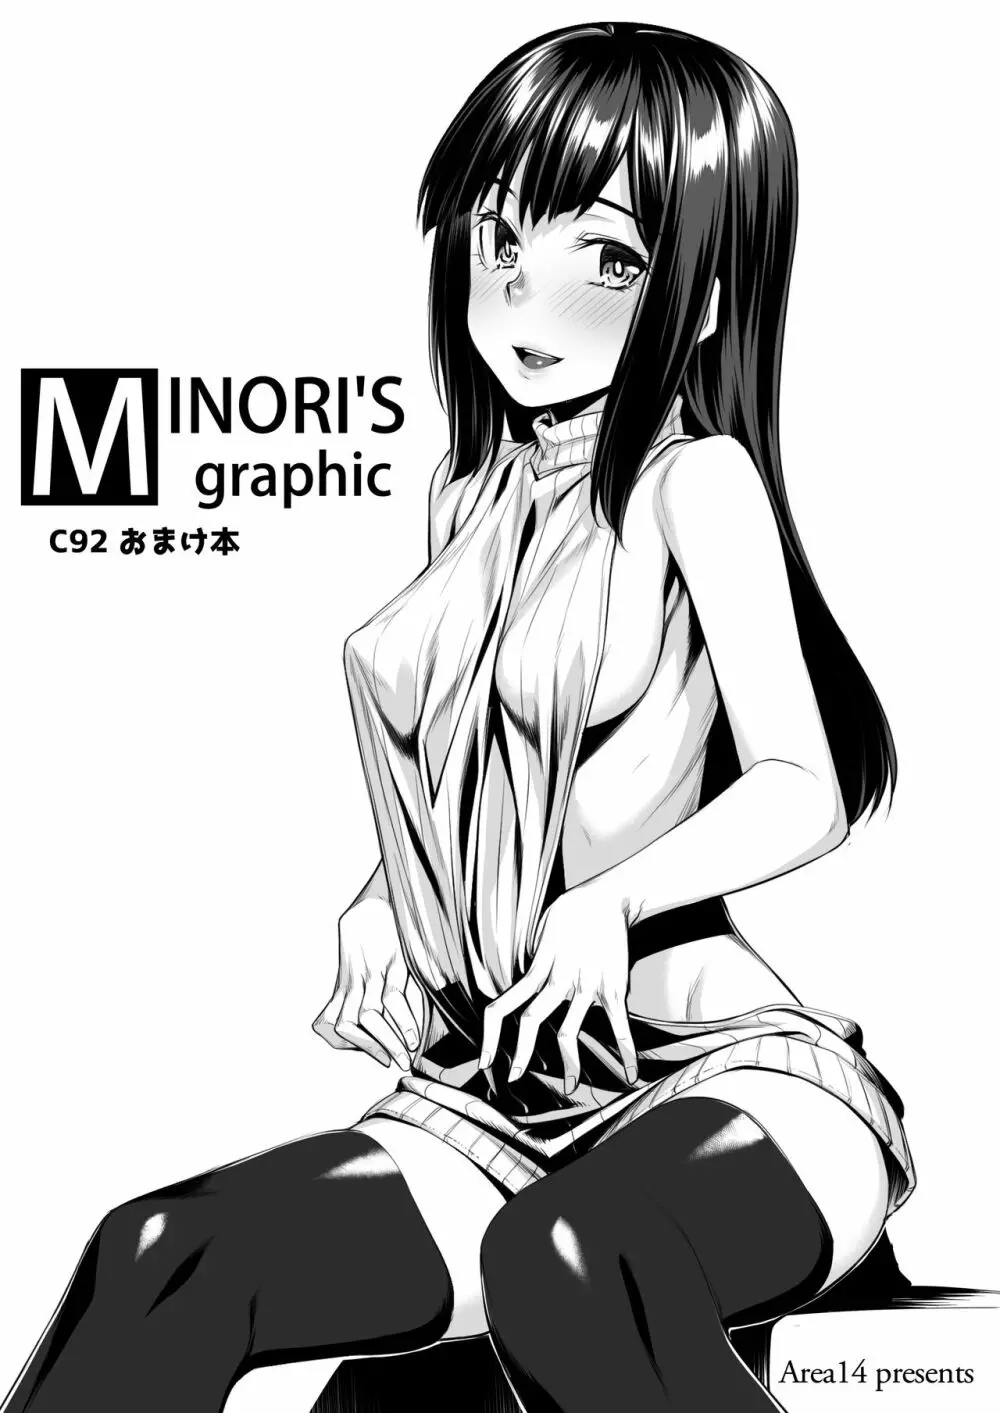 MINORI’S graphic C92おまけ本